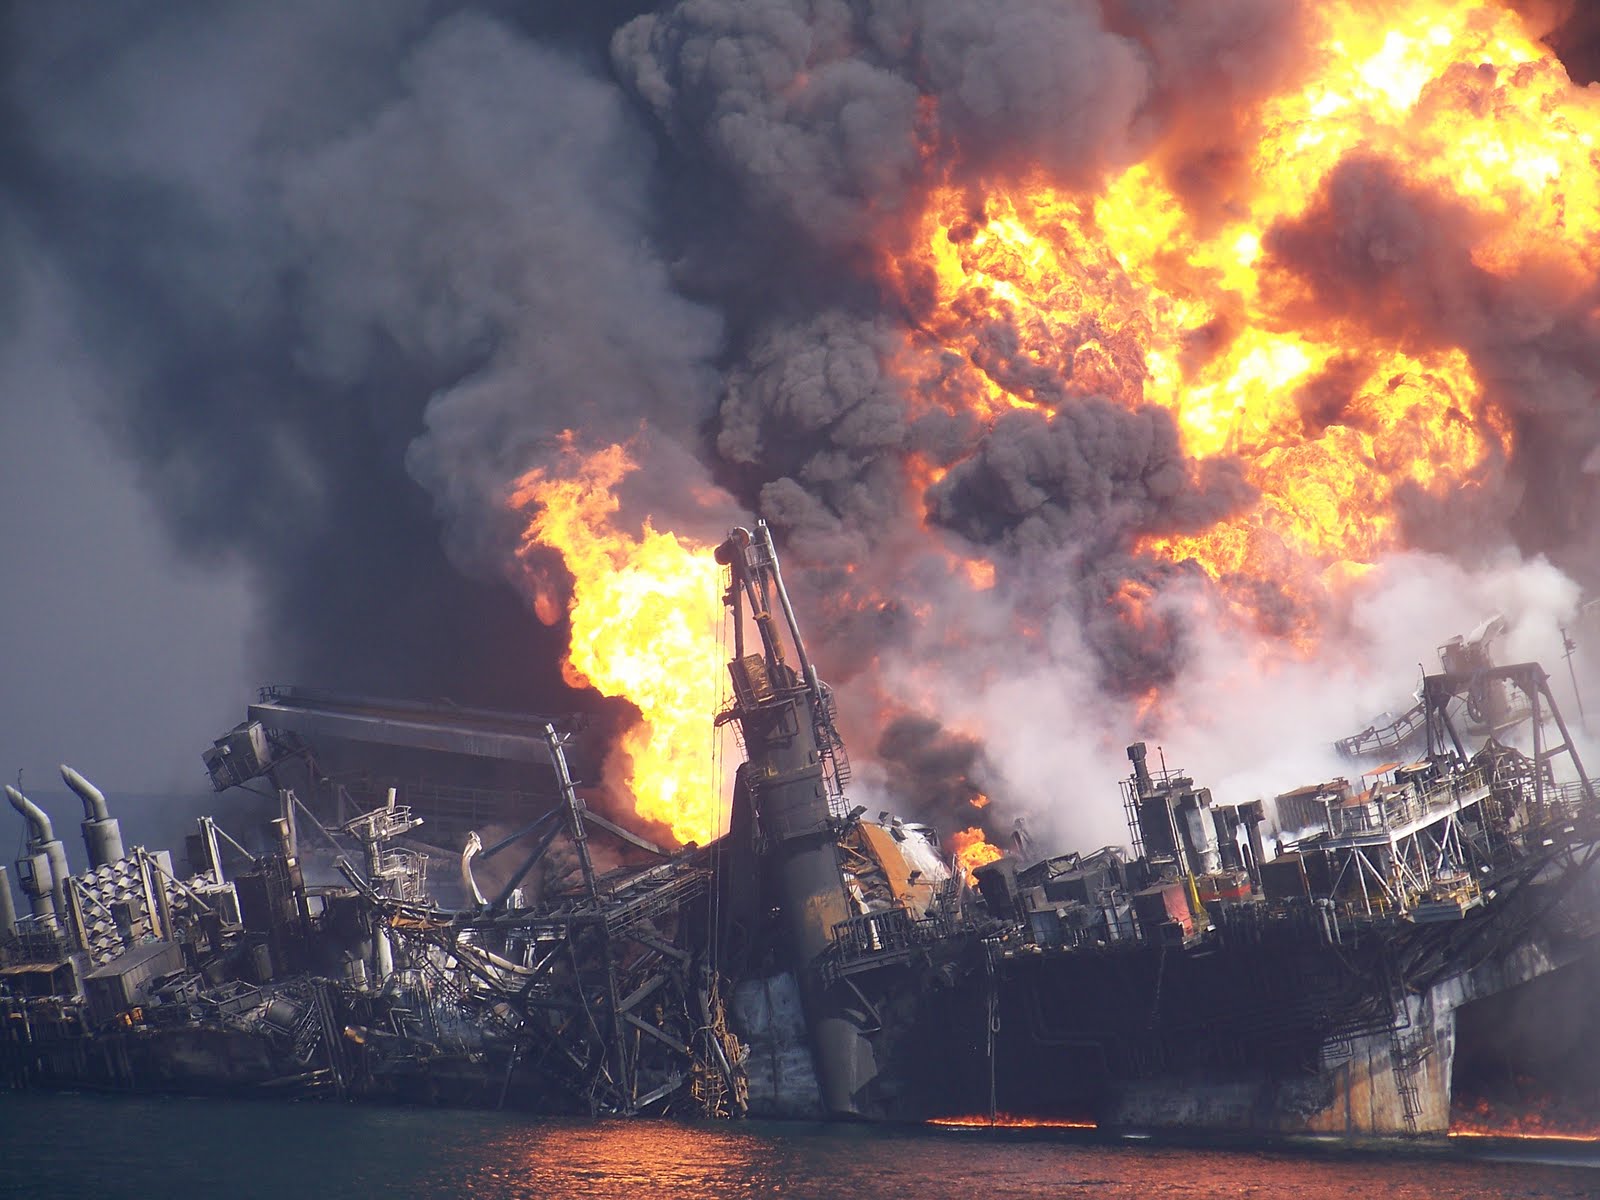 Аварии взрывы катастрофы. Дипвотер хорайзон. Взрыв нефтяной платформы Deepwater Horizon. Взрыв нефтяной платформы в мексиканском заливе 20 апреля 2010. Взрыв нефтяной платформы Deepwater Horizon - 20 апреля 2010 года.